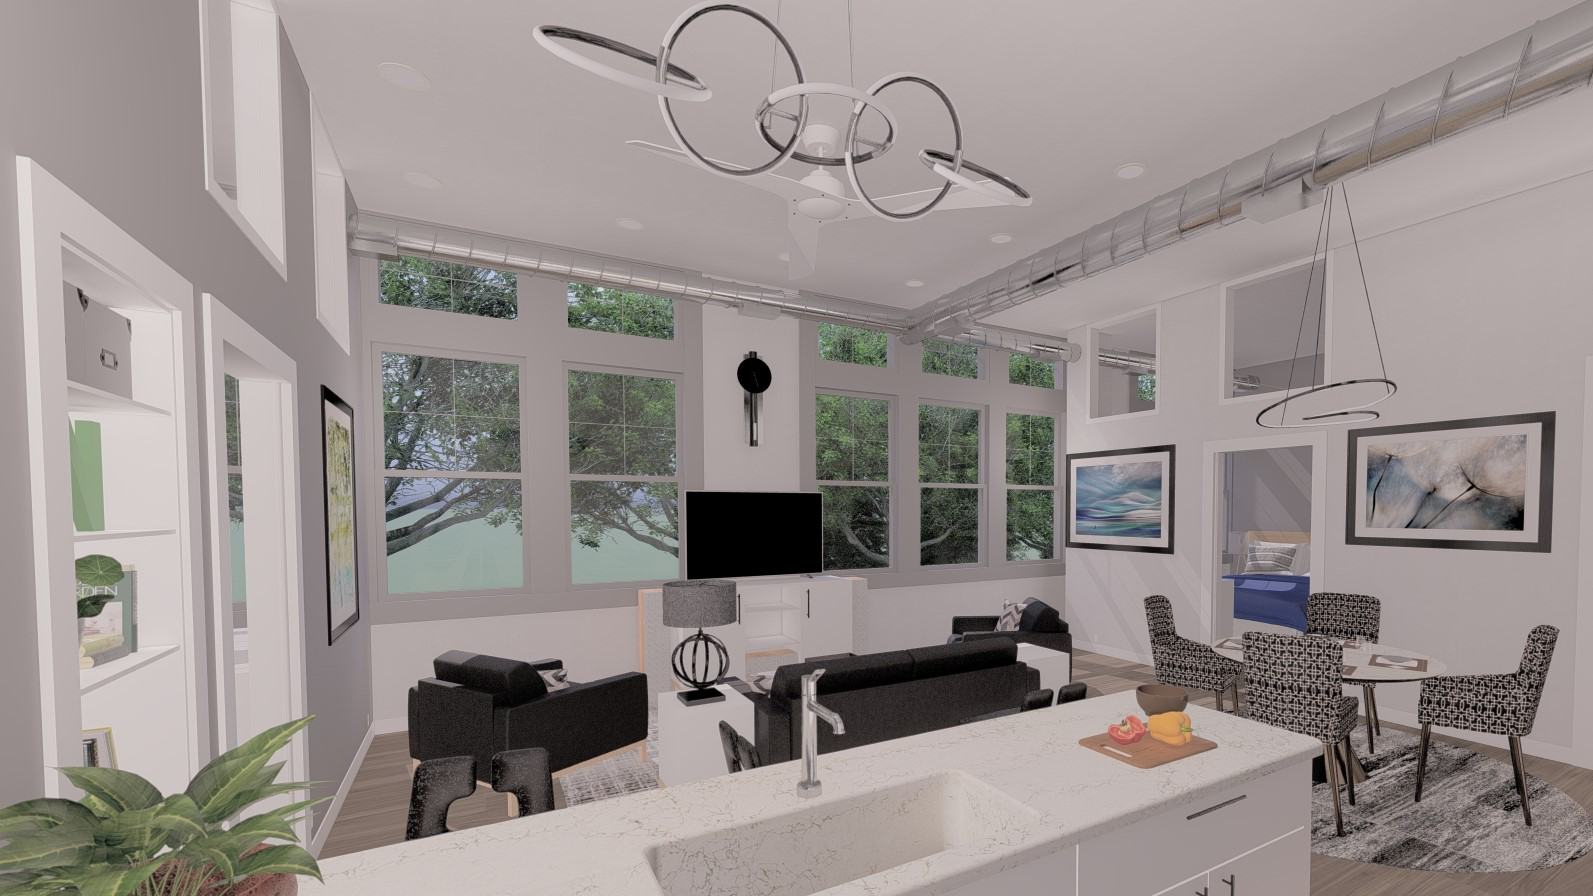 2 Bedroom - Dual Master Suites Townhouse i... - Condo for Rent in Orange,  CA | Apartments.com